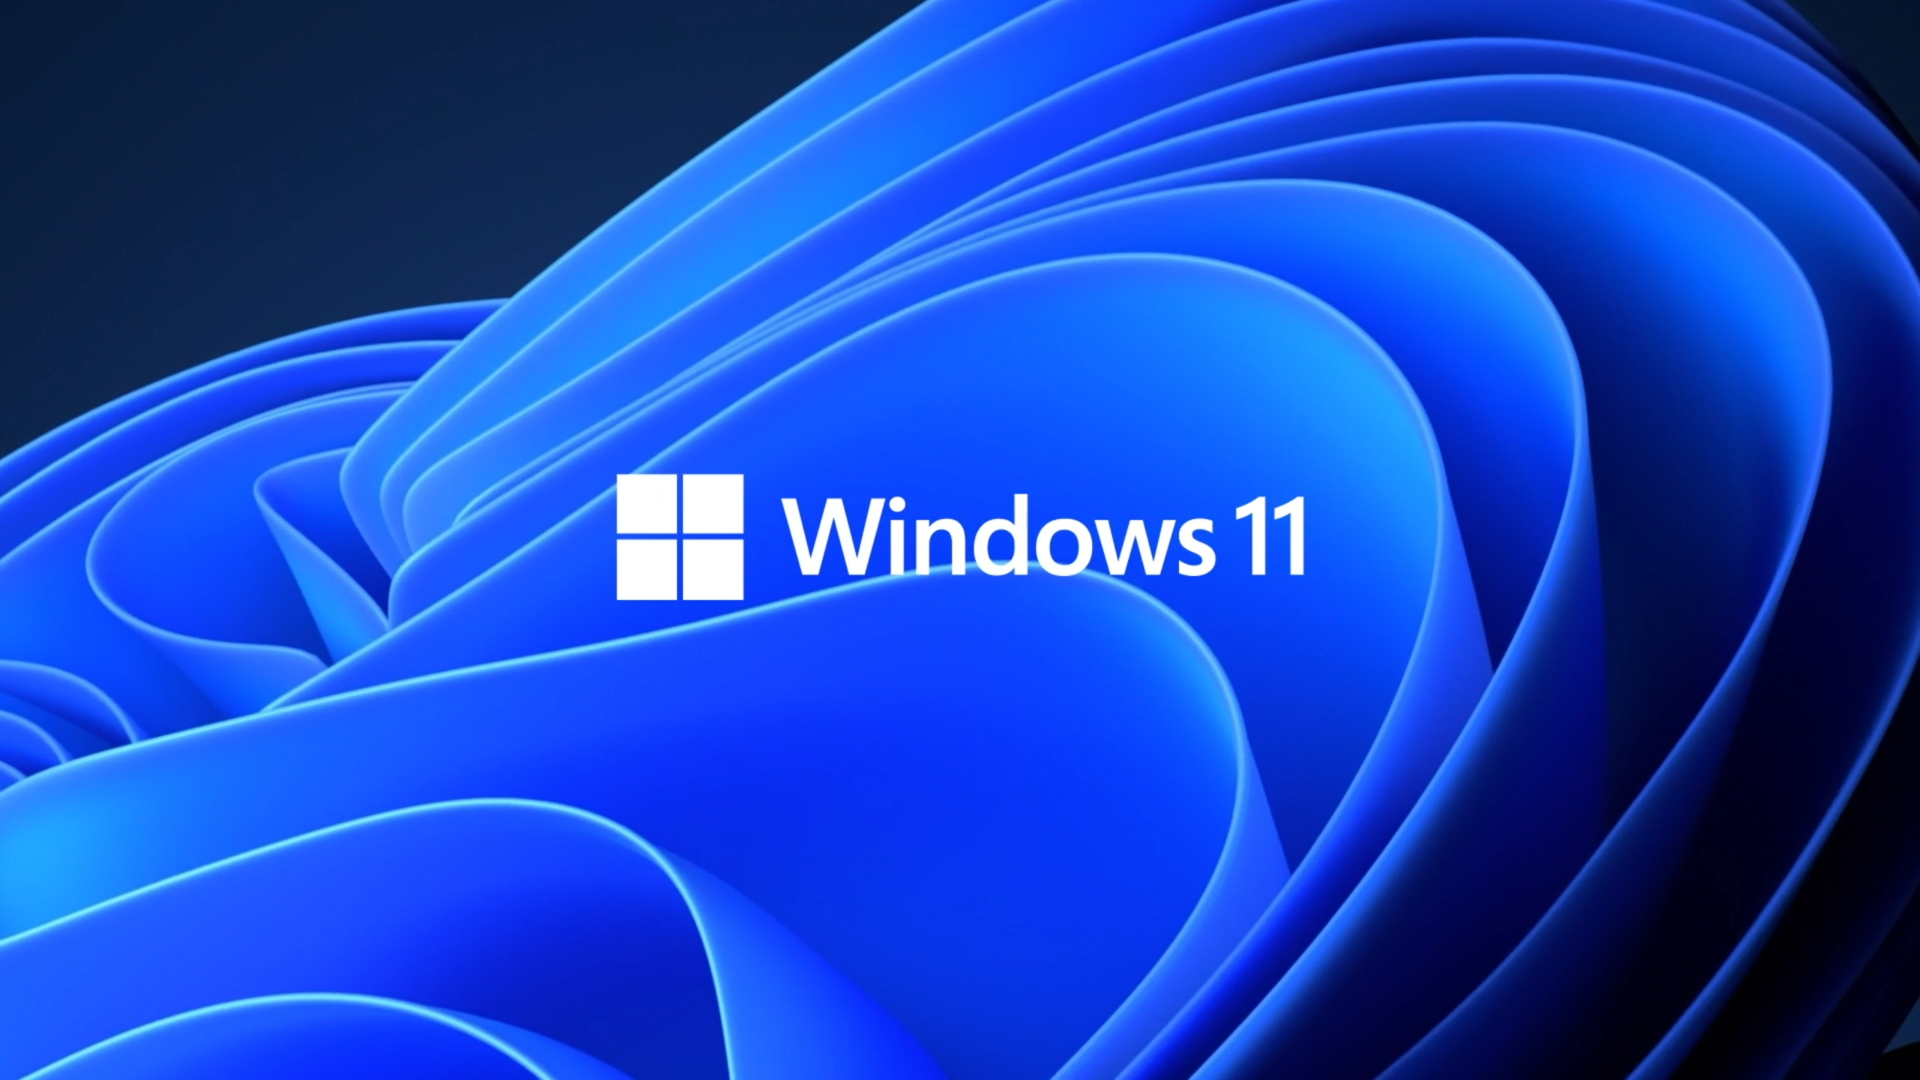 Windows 11 Wallpapers   Top 25 Best Windows 11 Backgrounds Download 1920x1080